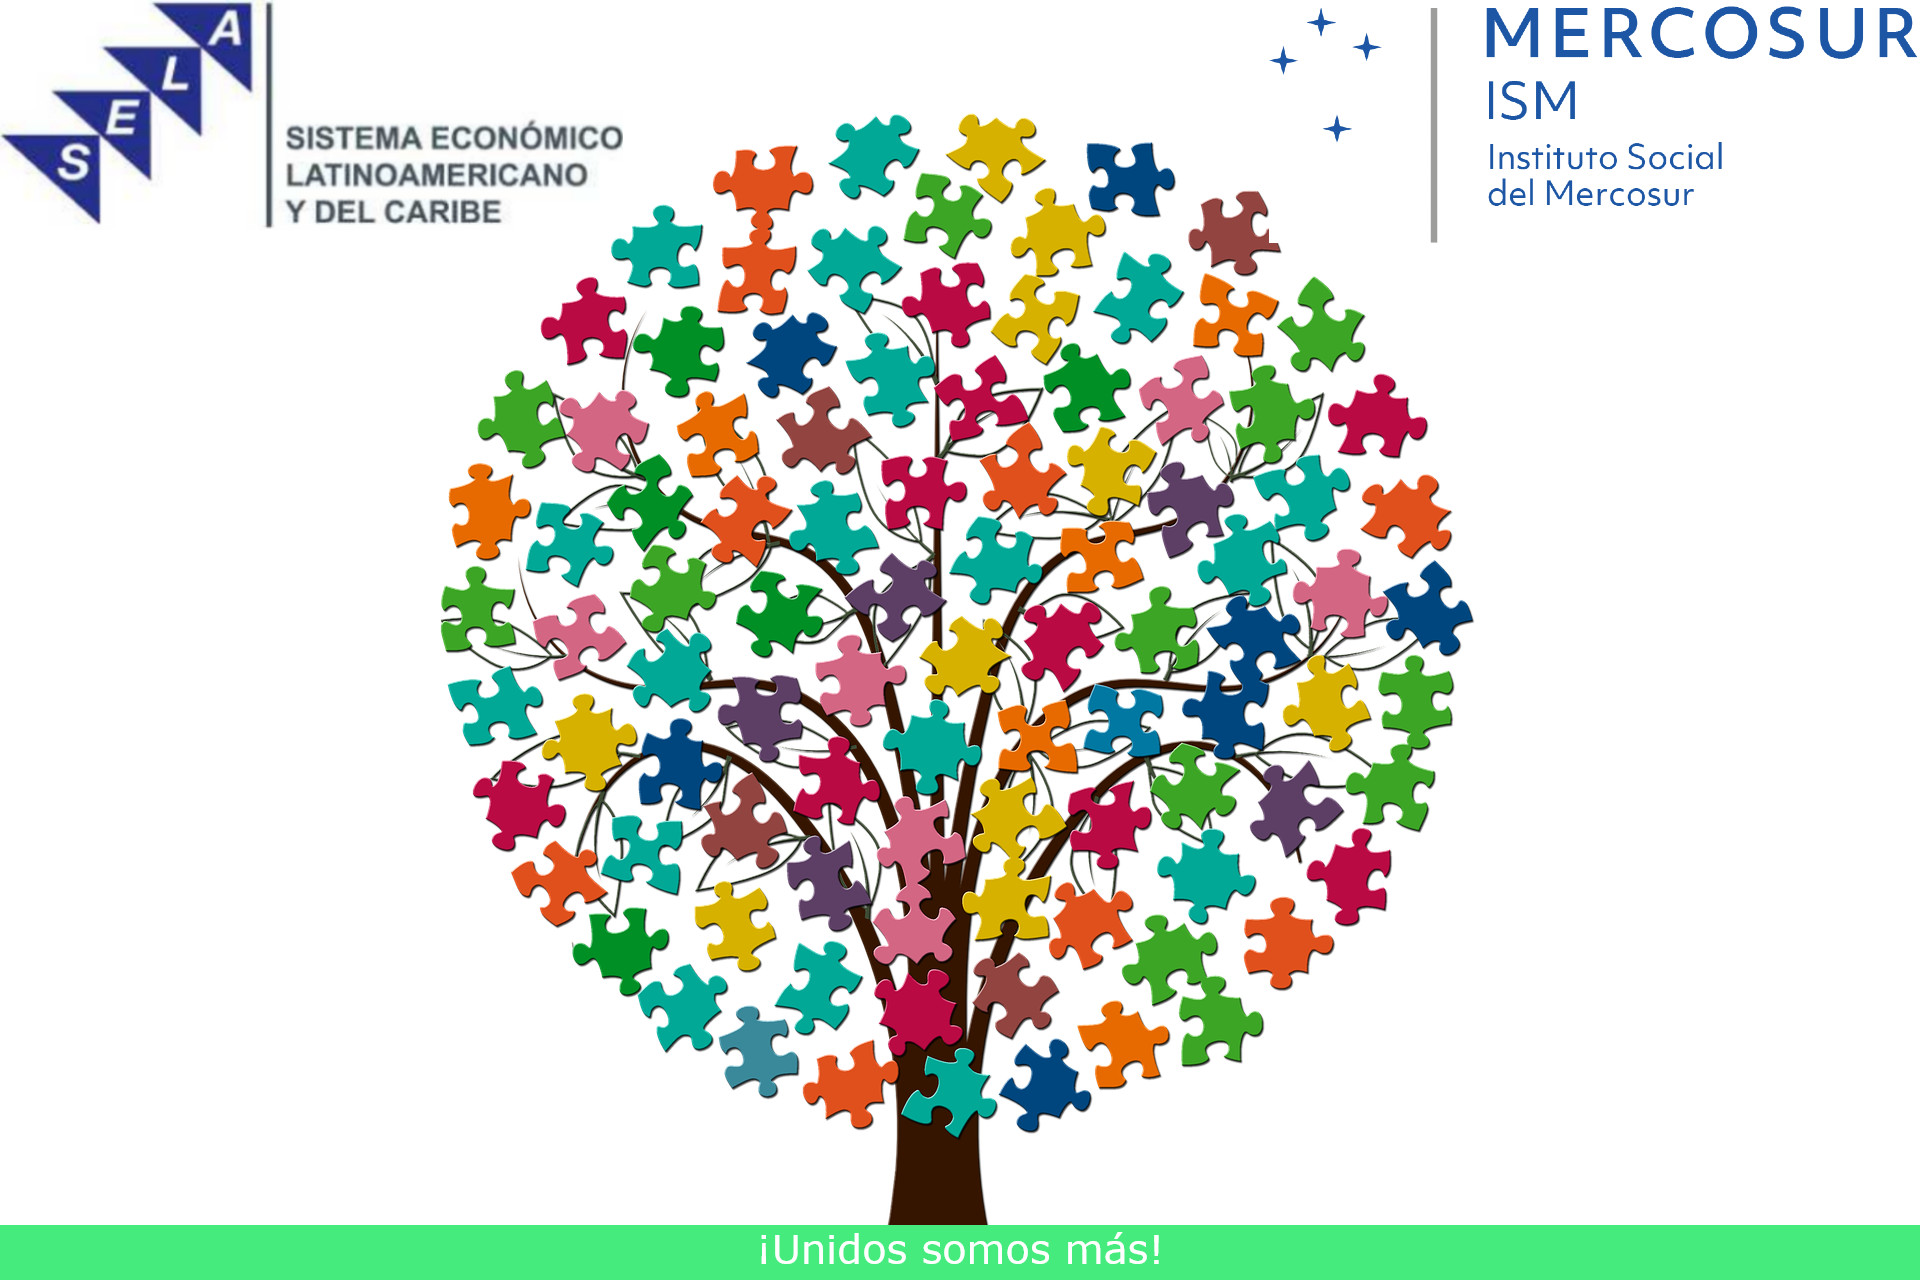 SELA y el Instituto Social del Mercosur se unen para promover el conocimiento sobre el desarrollo económico y social